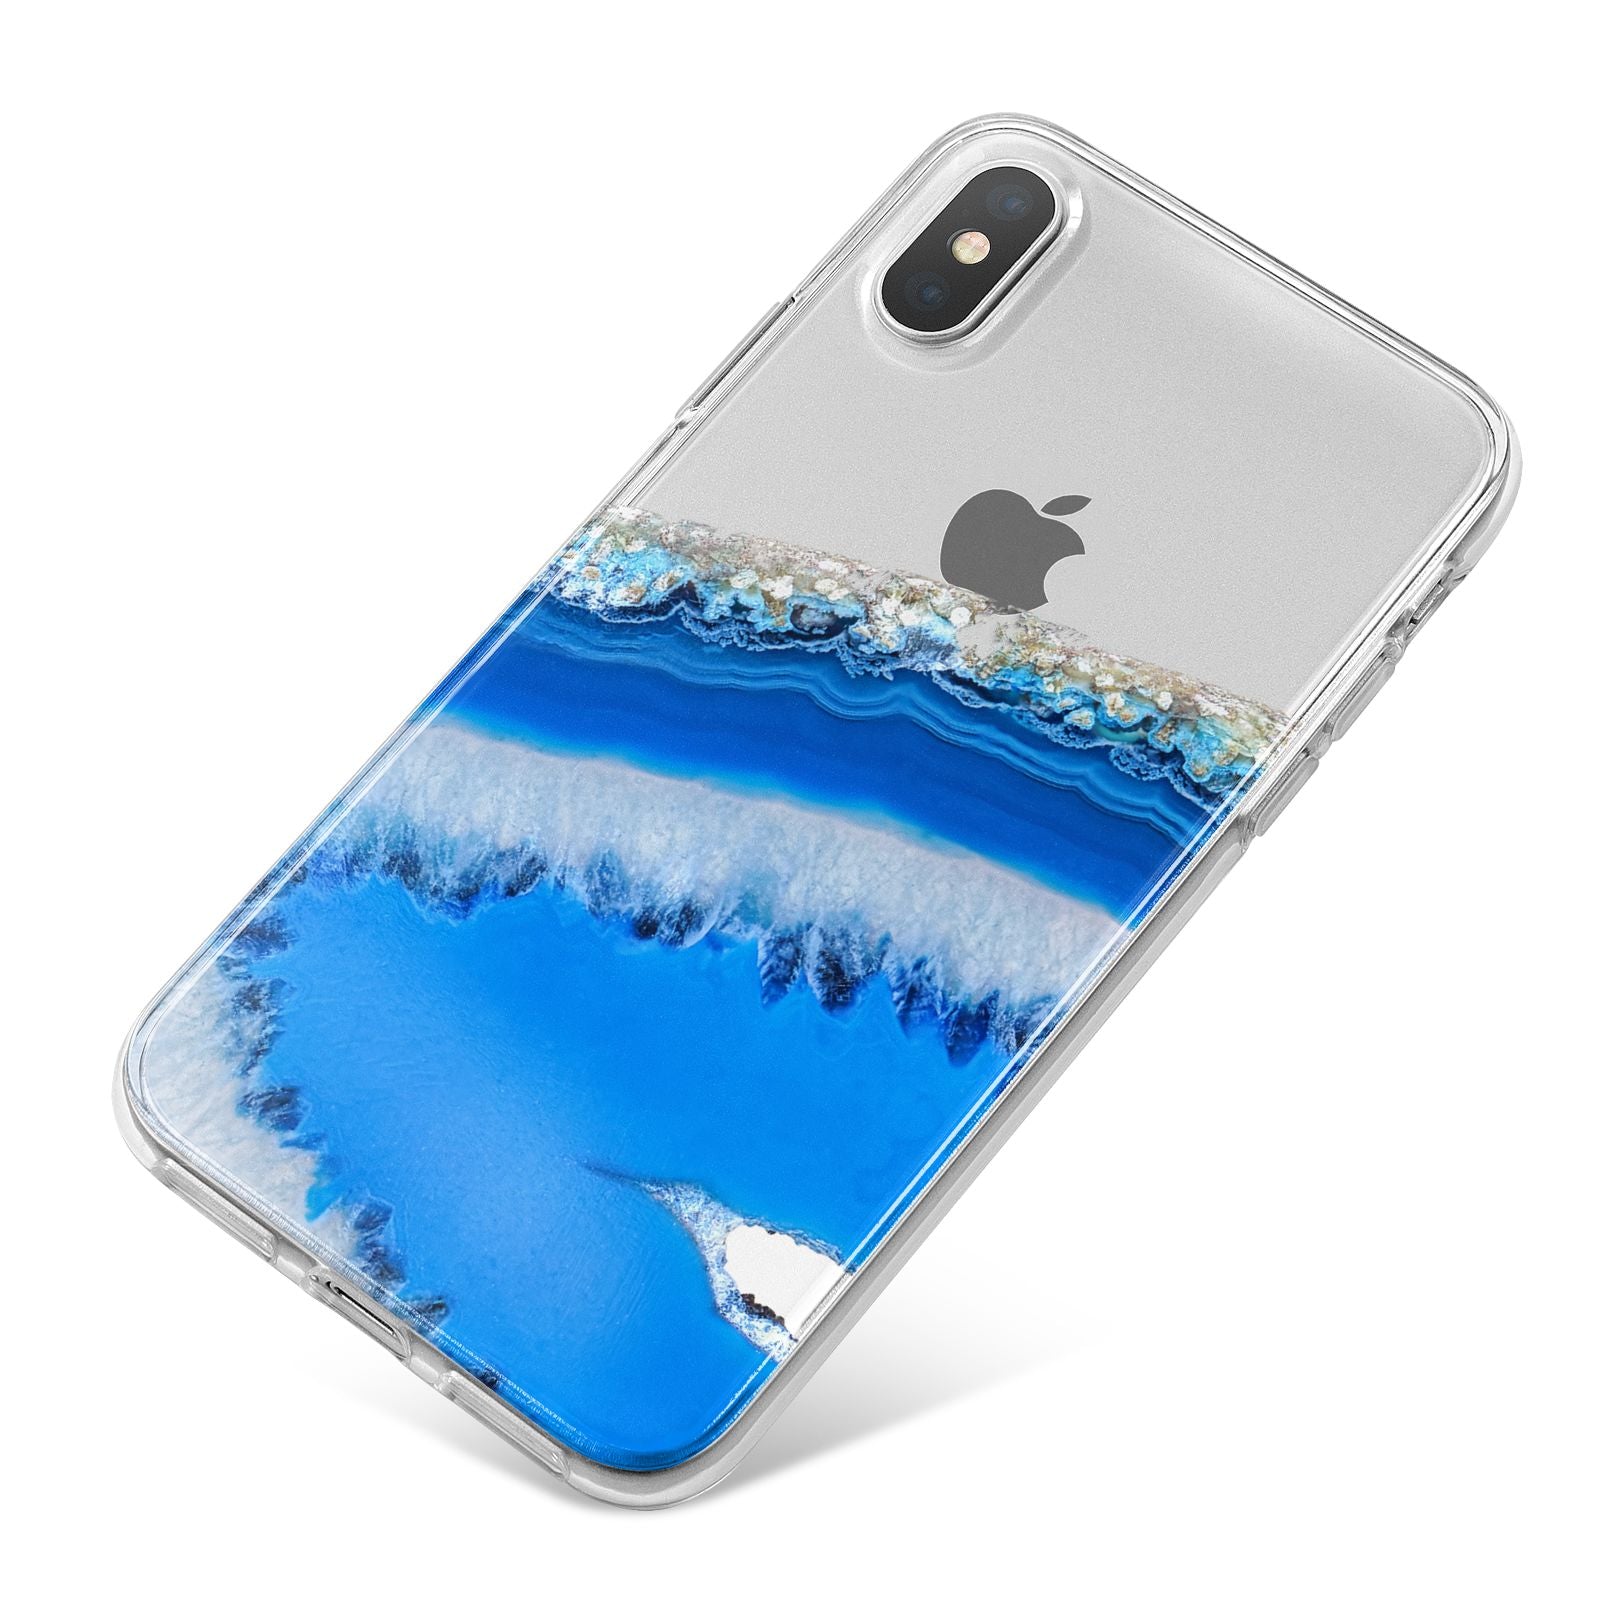 Agate Blue iPhone X Bumper Case on Silver iPhone